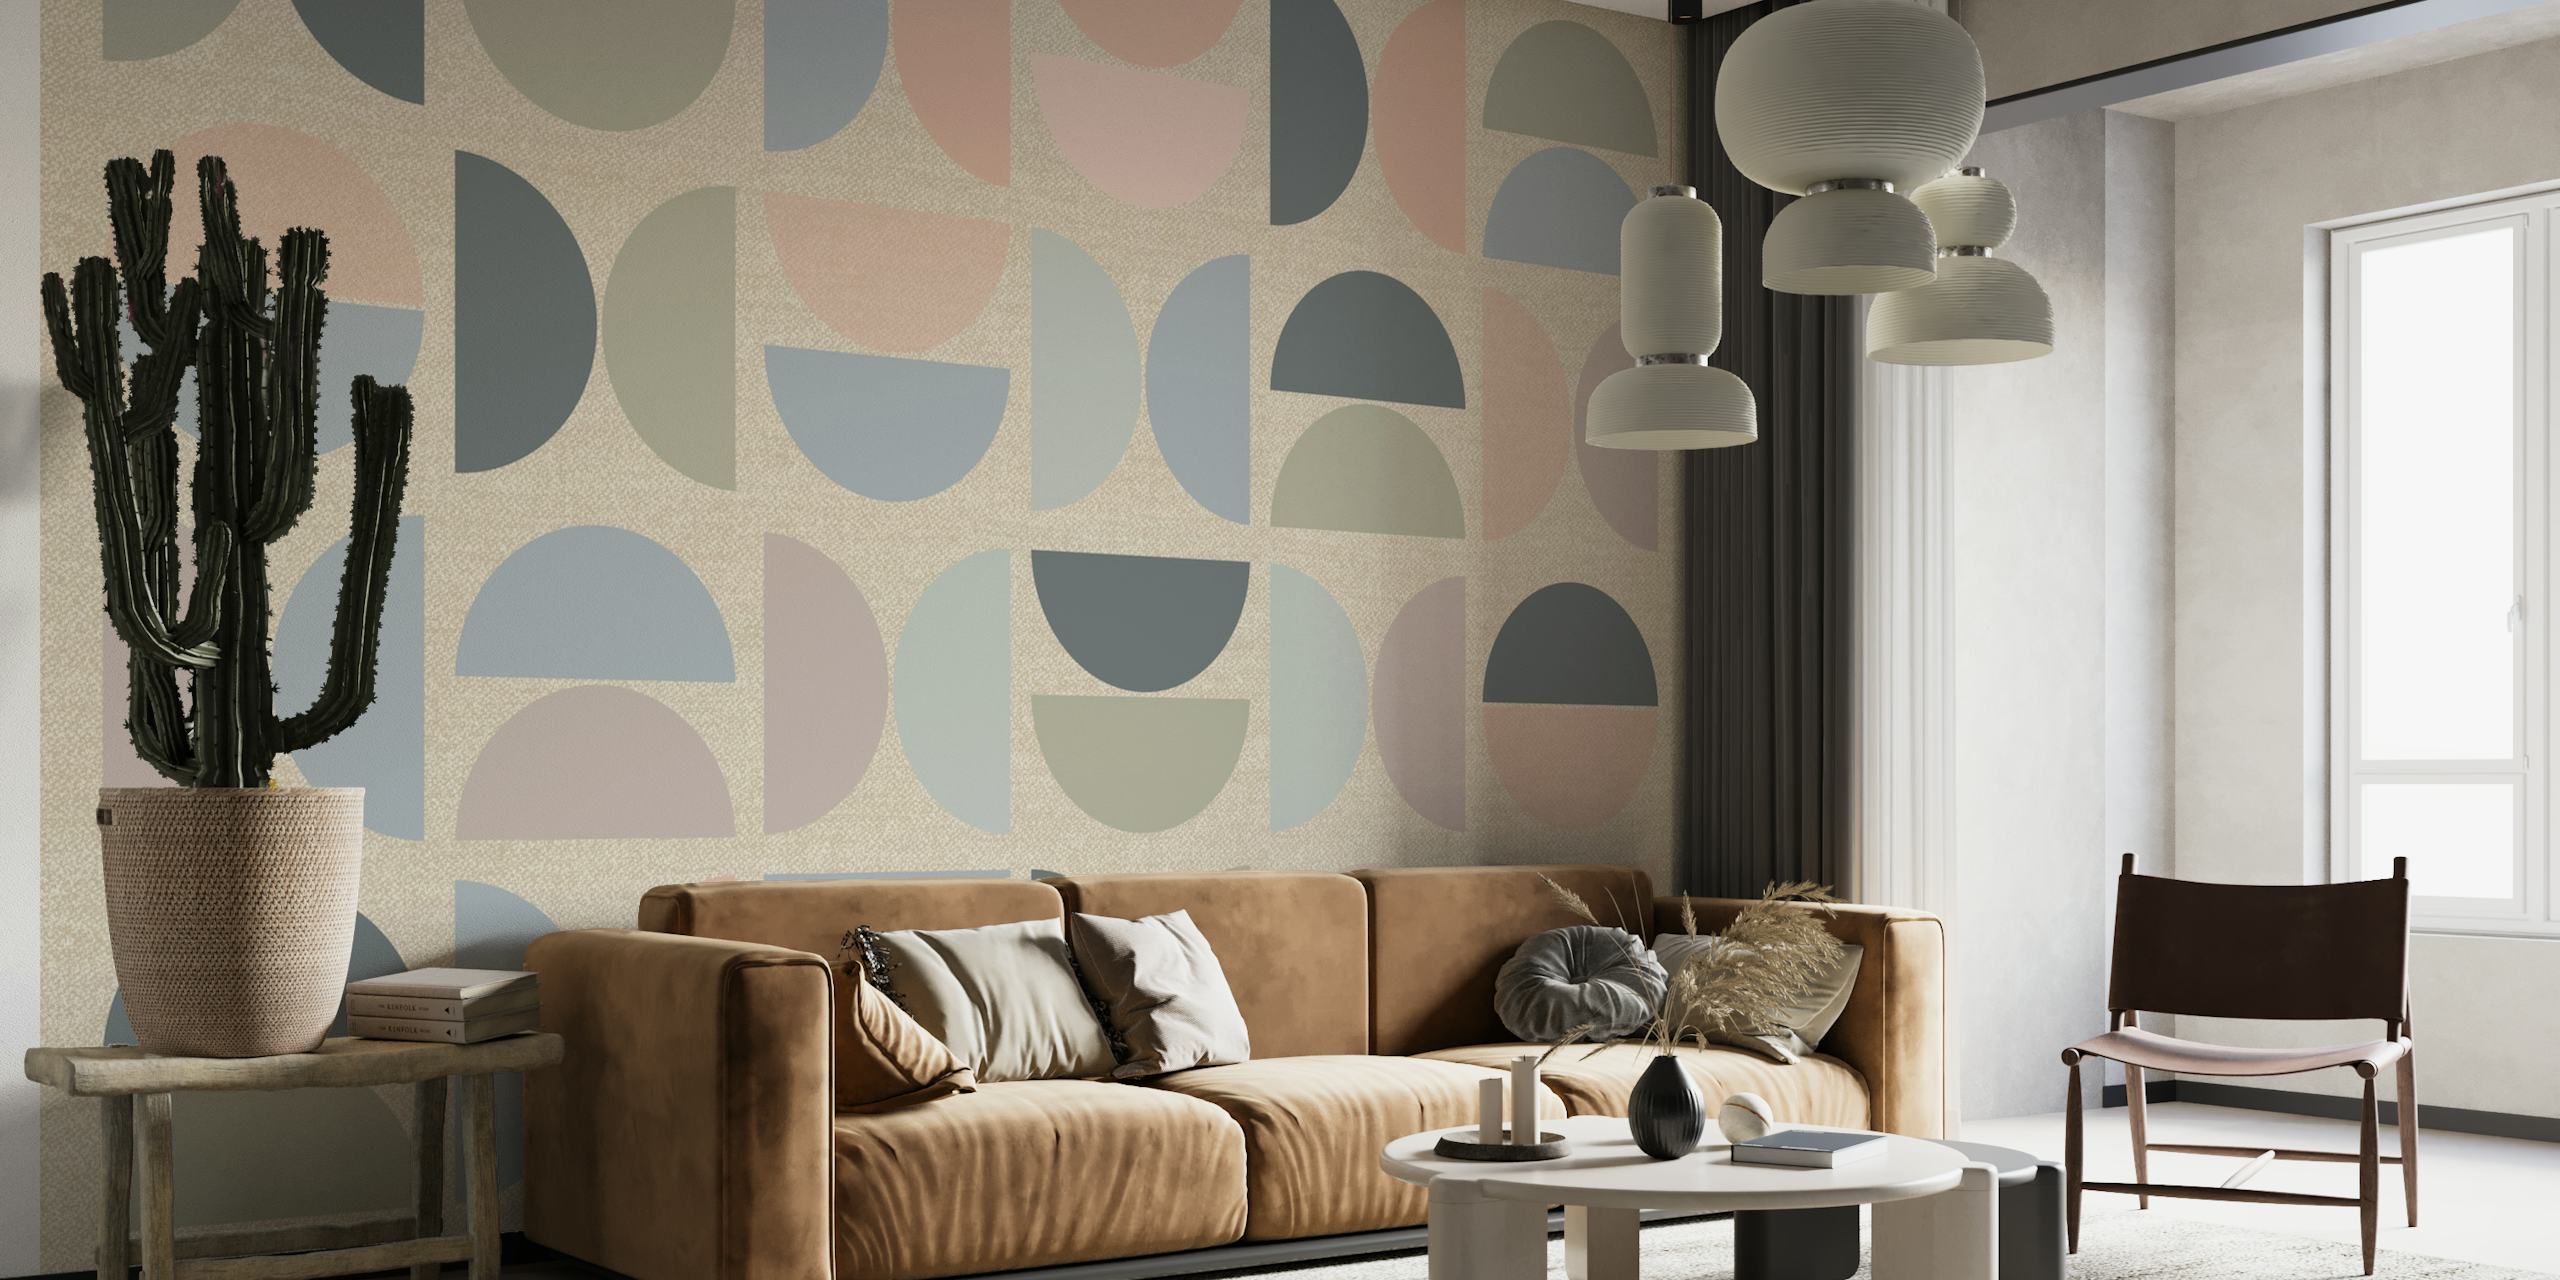 Väggmålning i dämpad pastell i Bauhaus-stil med geometriska former i mjuka färger